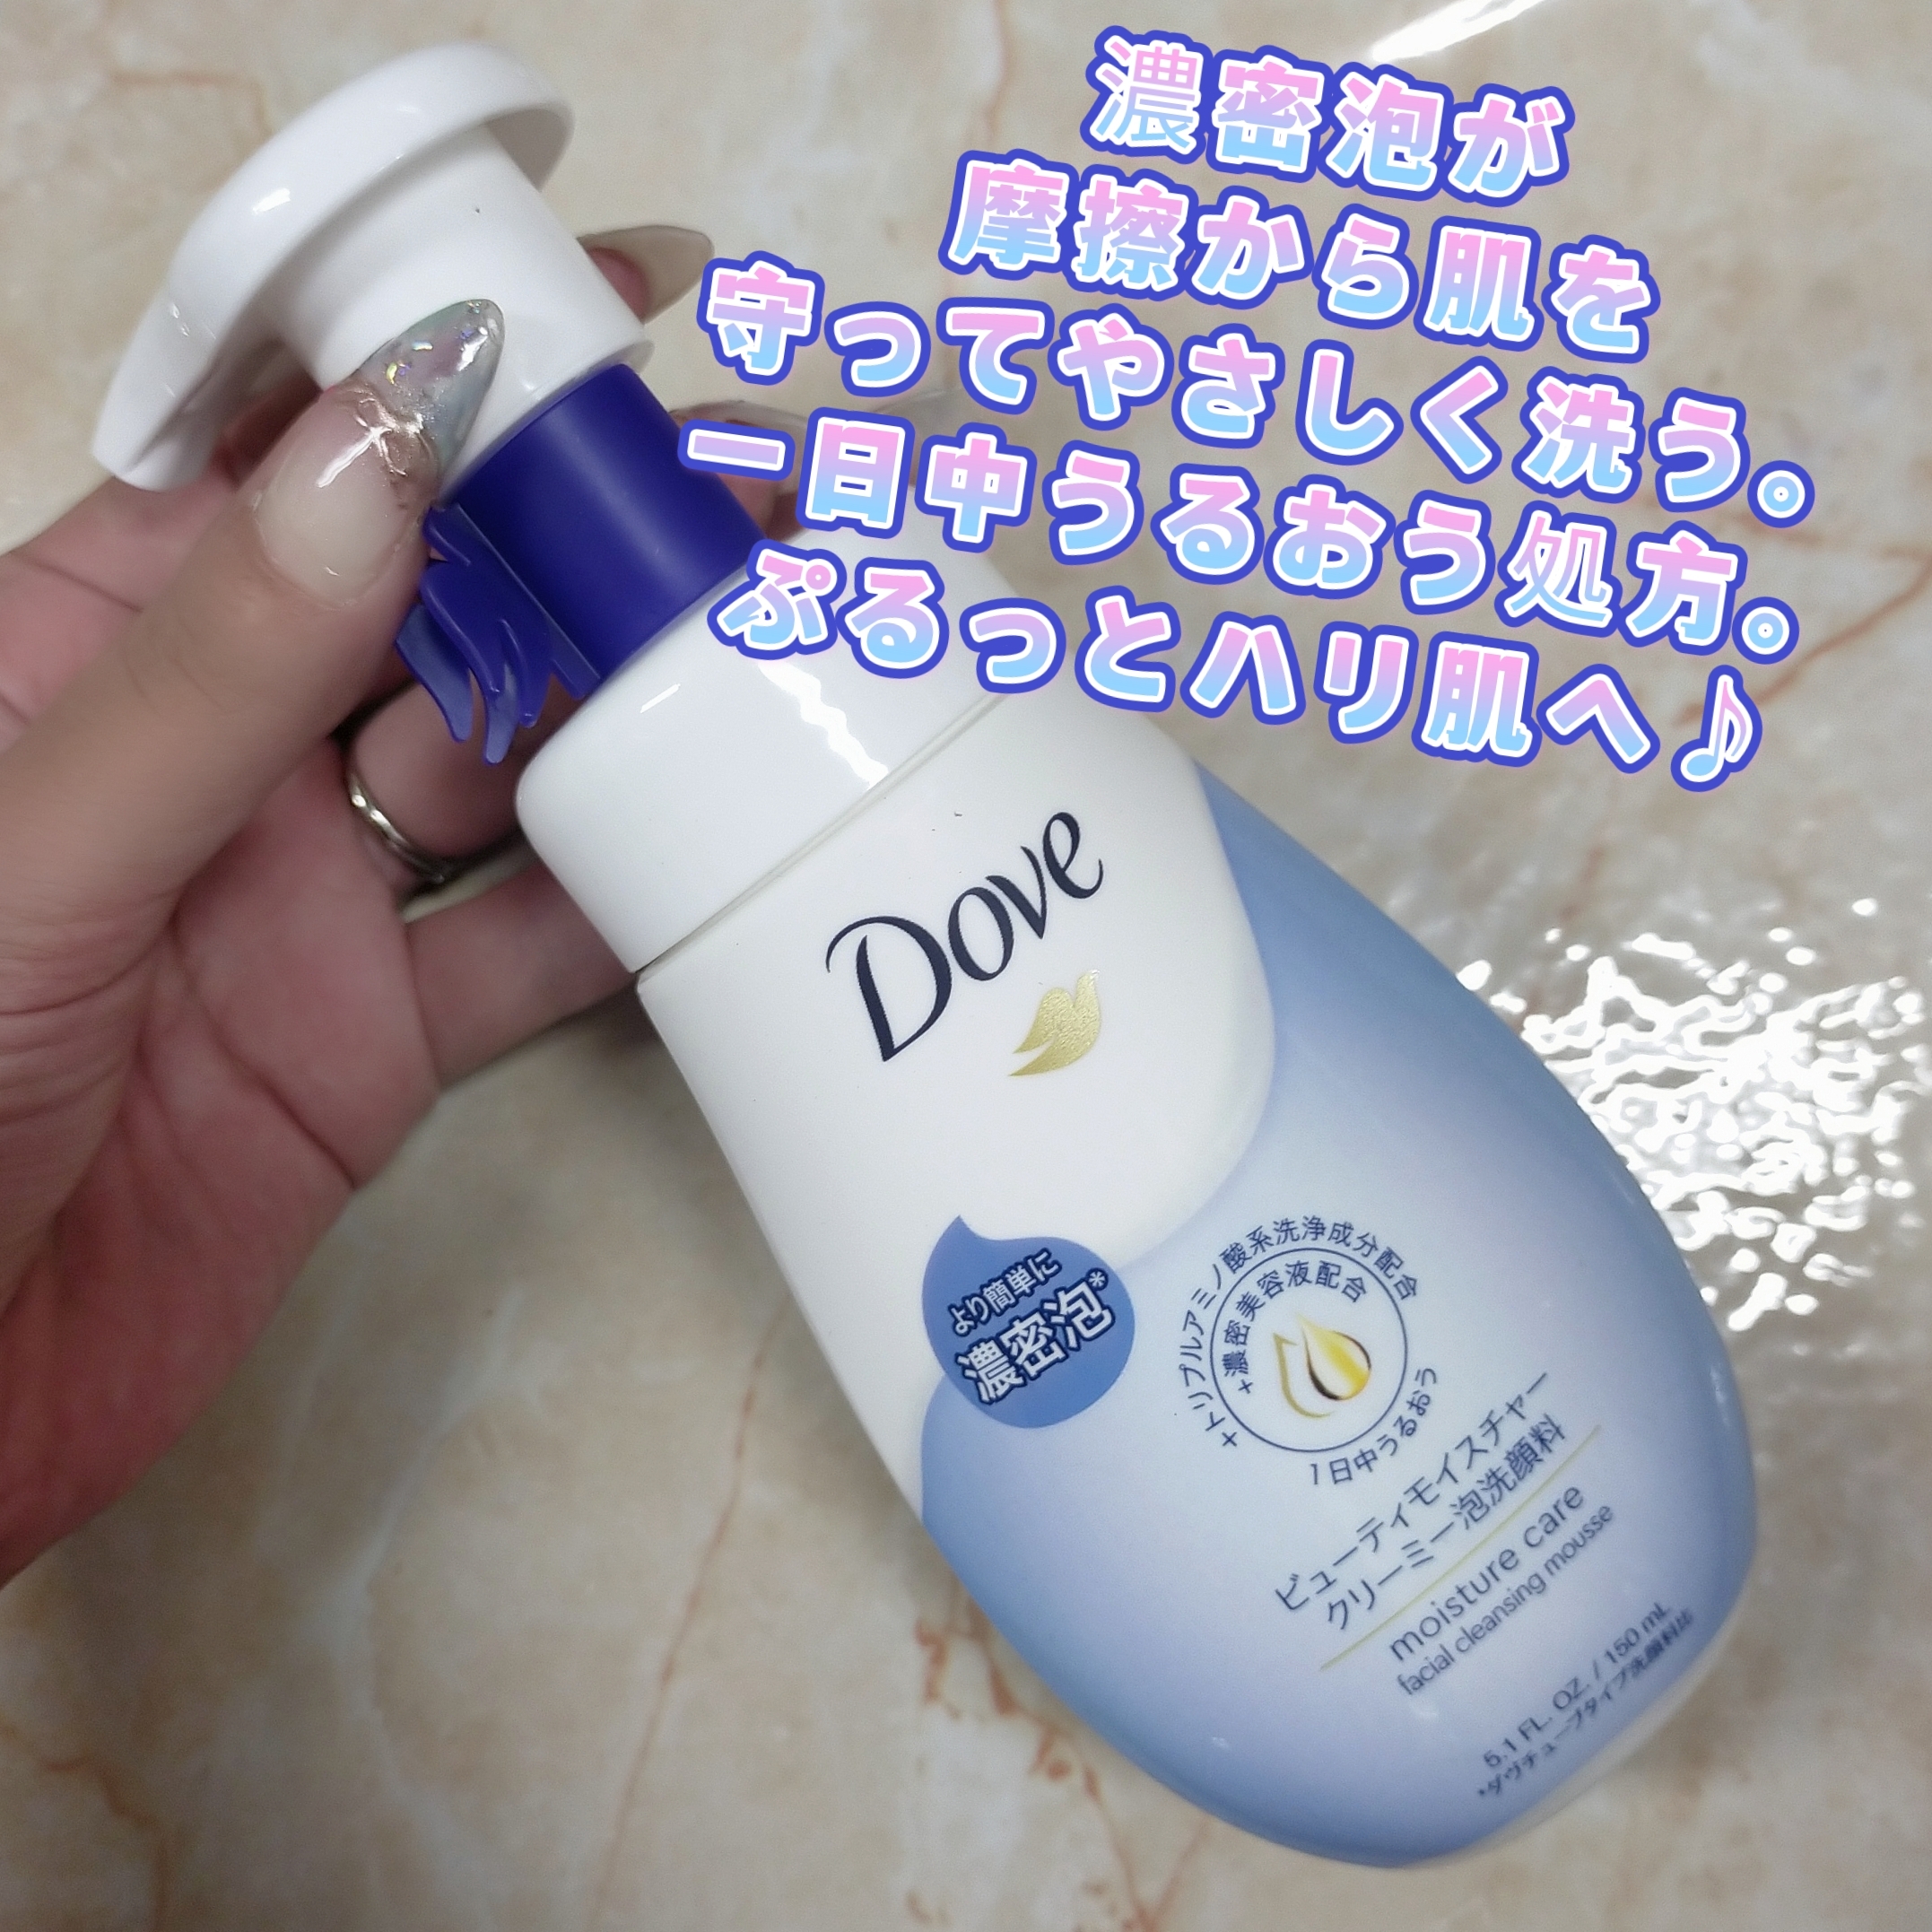 Dove(ダヴ) ビューティモイスチャー クリーミー泡洗顔料の良い点・メリットに関するみこさんの口コミ画像1